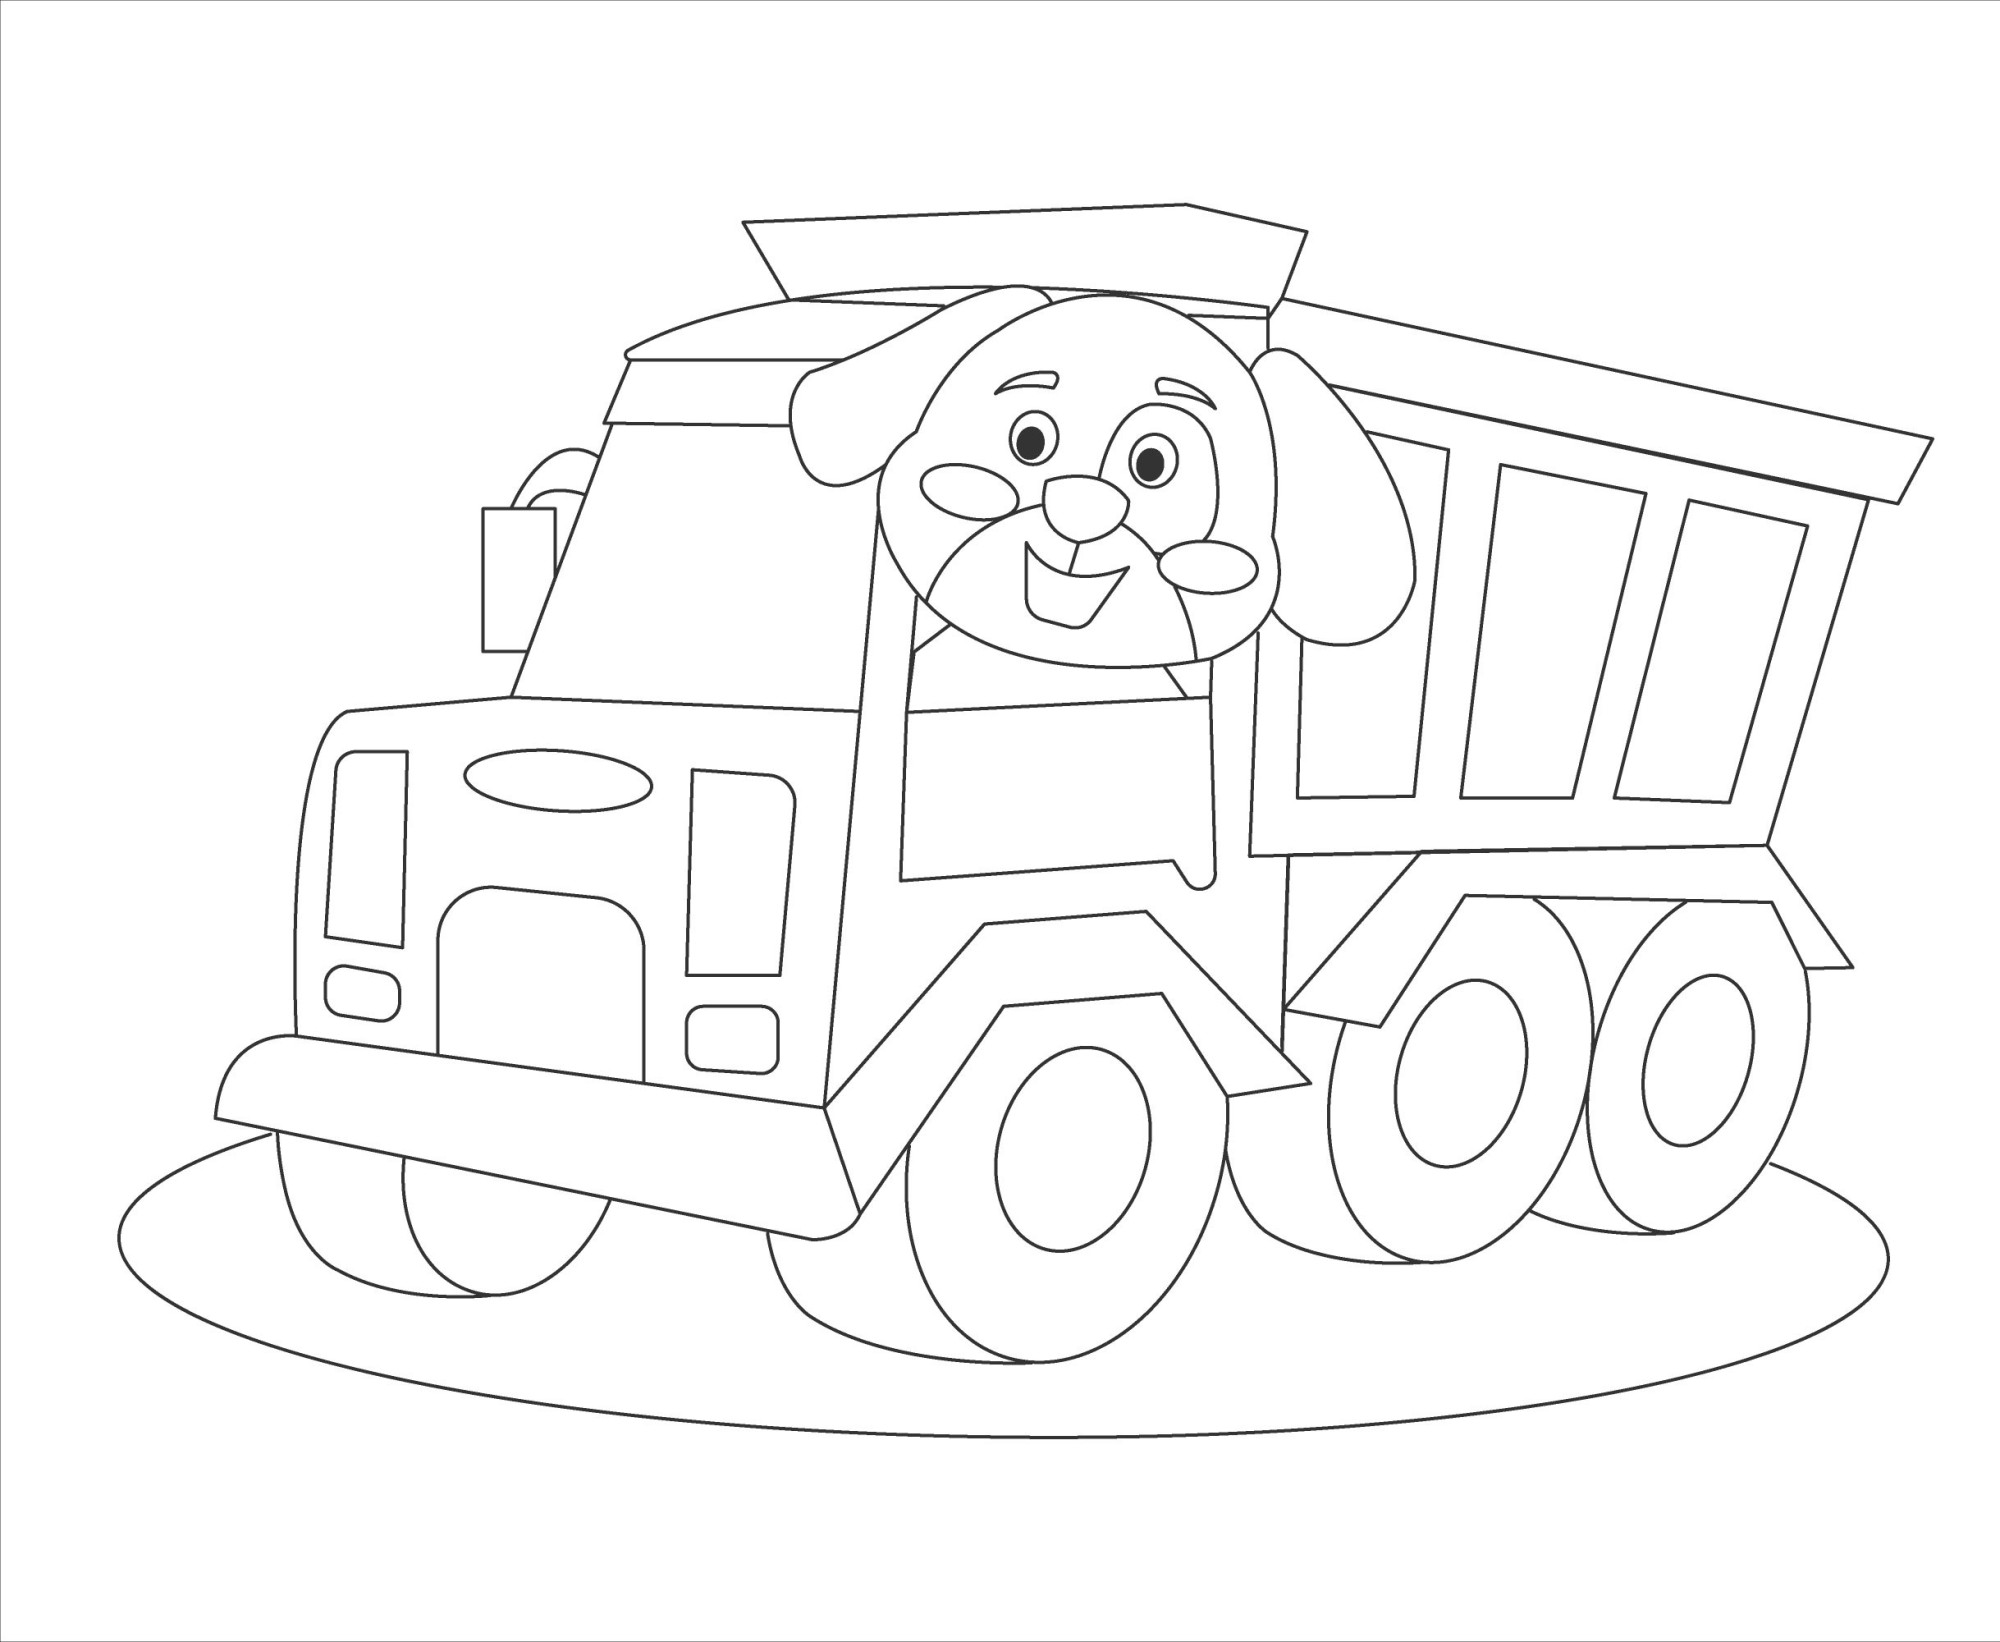 Раскраска для детей: игрушка грузовик с собачкой за рулем